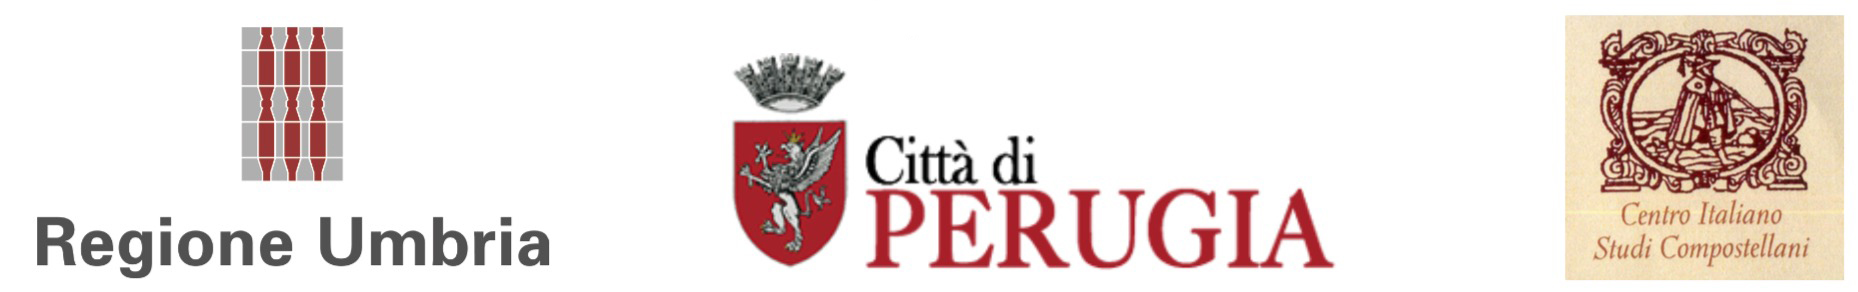 loghi Regione Umbria, città di Perugia e Centro italiano studi compostellani